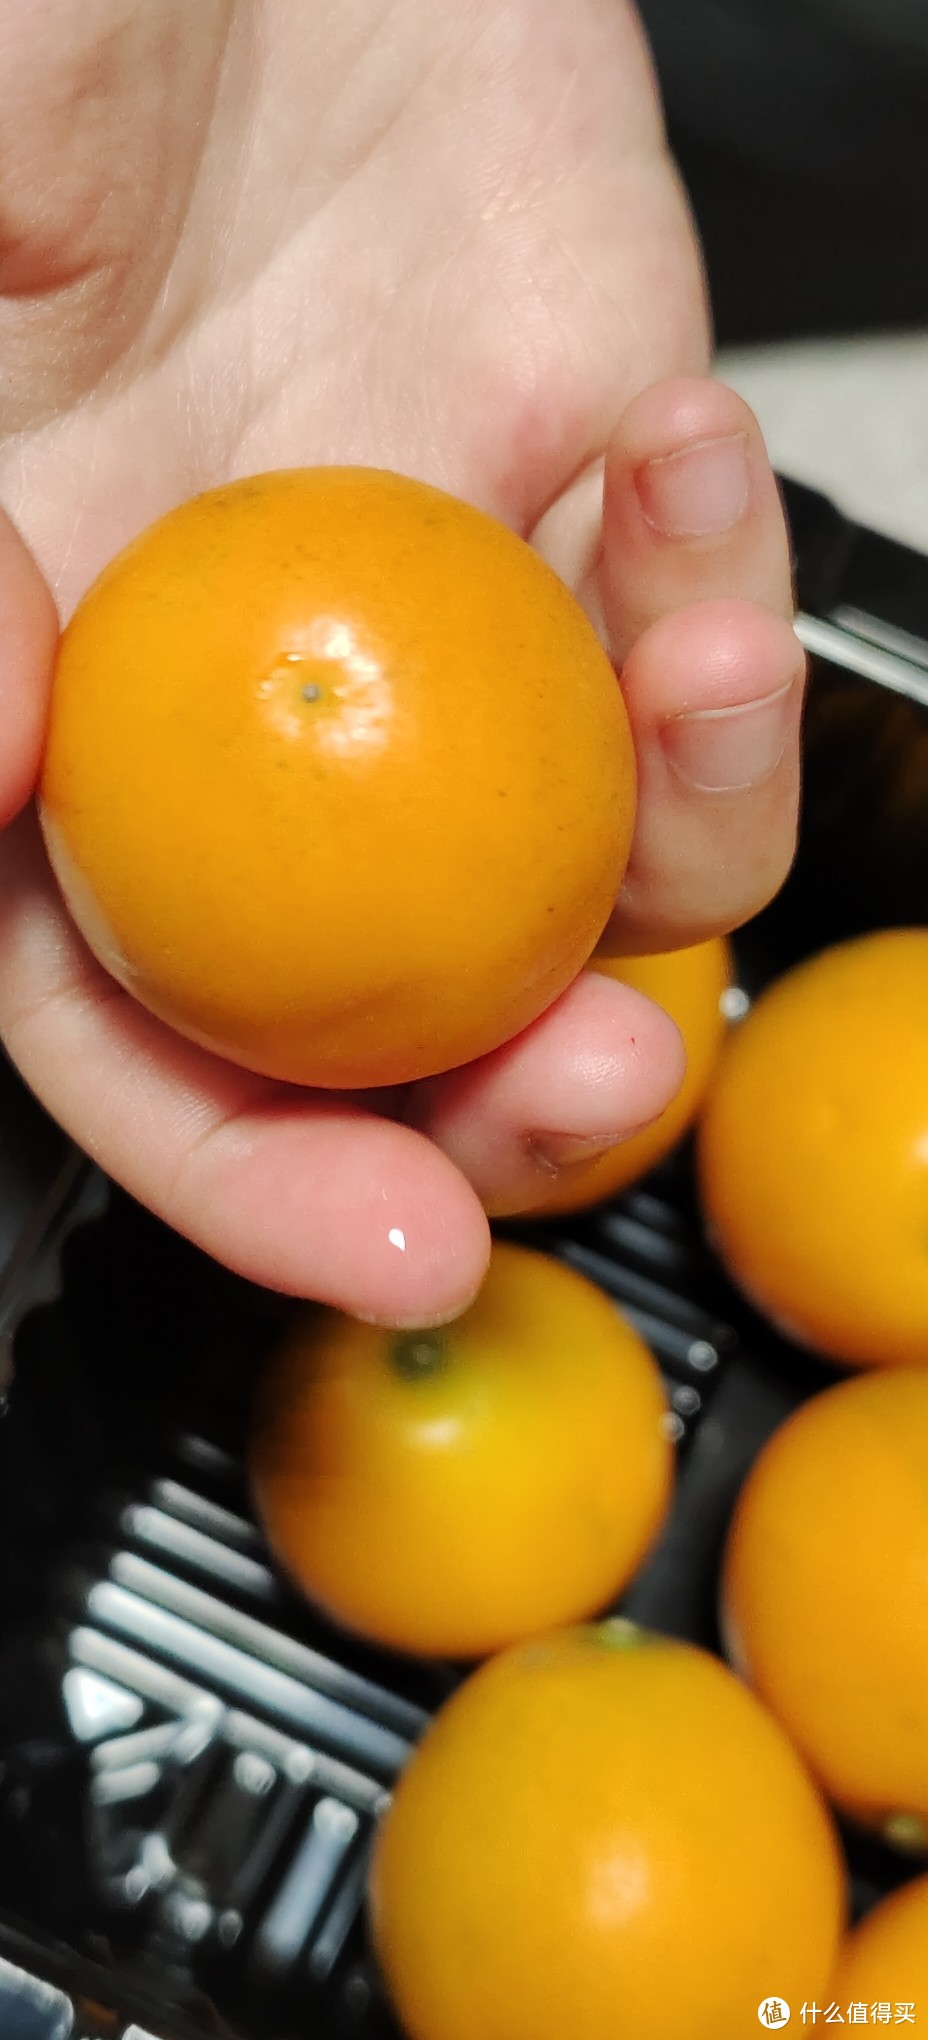 来自泰国的橘子金桔果/无籽金桔脆皮纯甜蜜金桔礼盒装4斤大果新鲜当季水果野生金桔蜜蛋